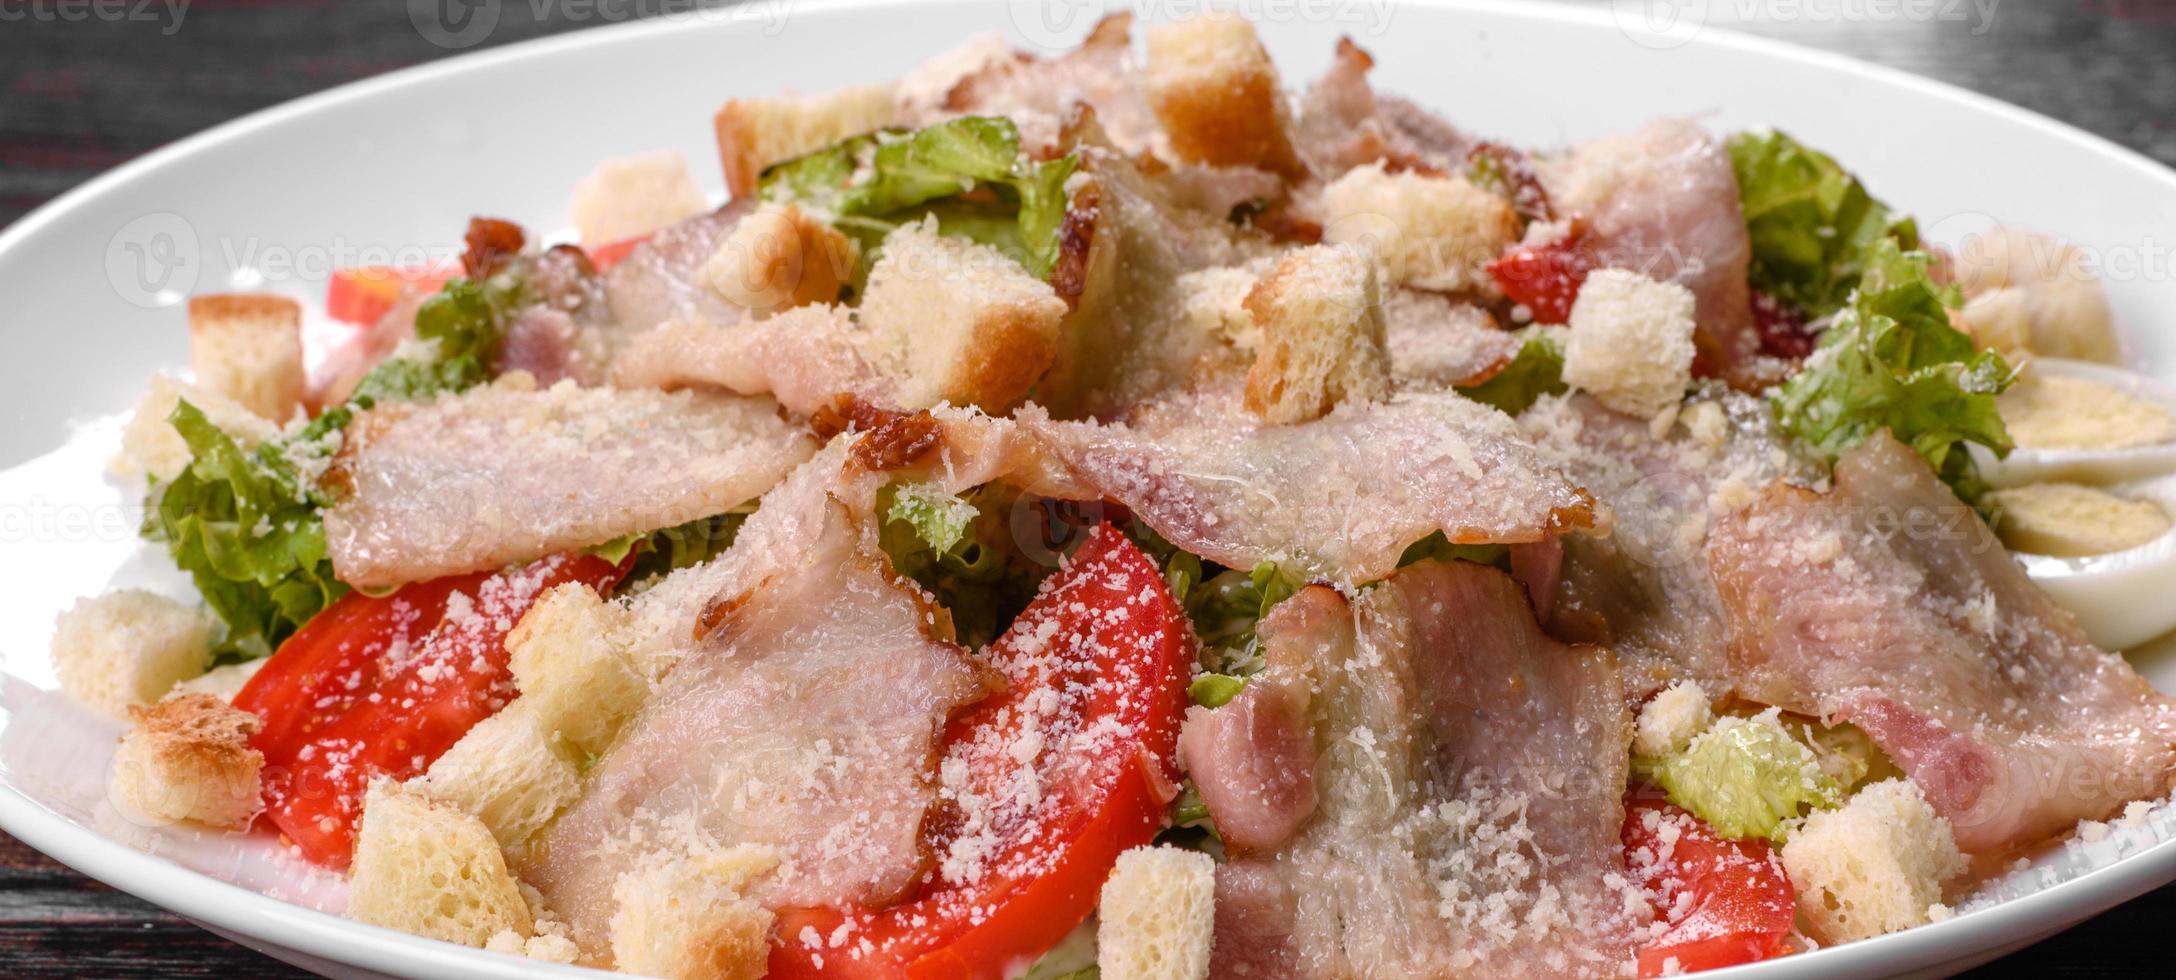 délicieuse salade fraîche avec du bacon et des tomates avec des épices et des légumes verts photo